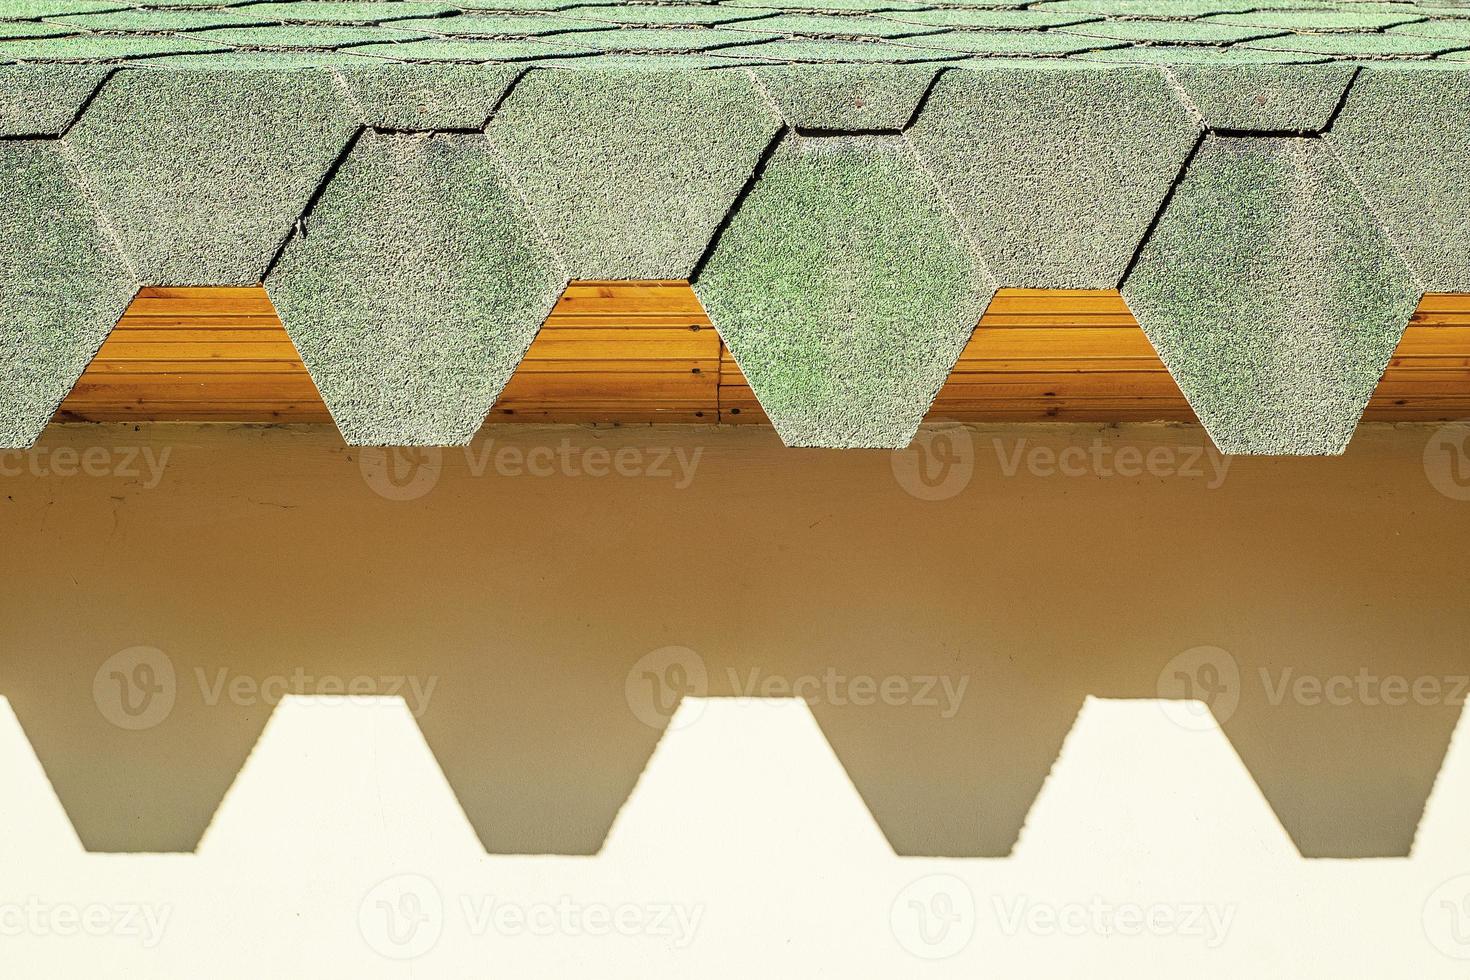 groendak met zeshoekige pannen. dak met gekartelde randen die harde schaduwen op de muur werpen. foto